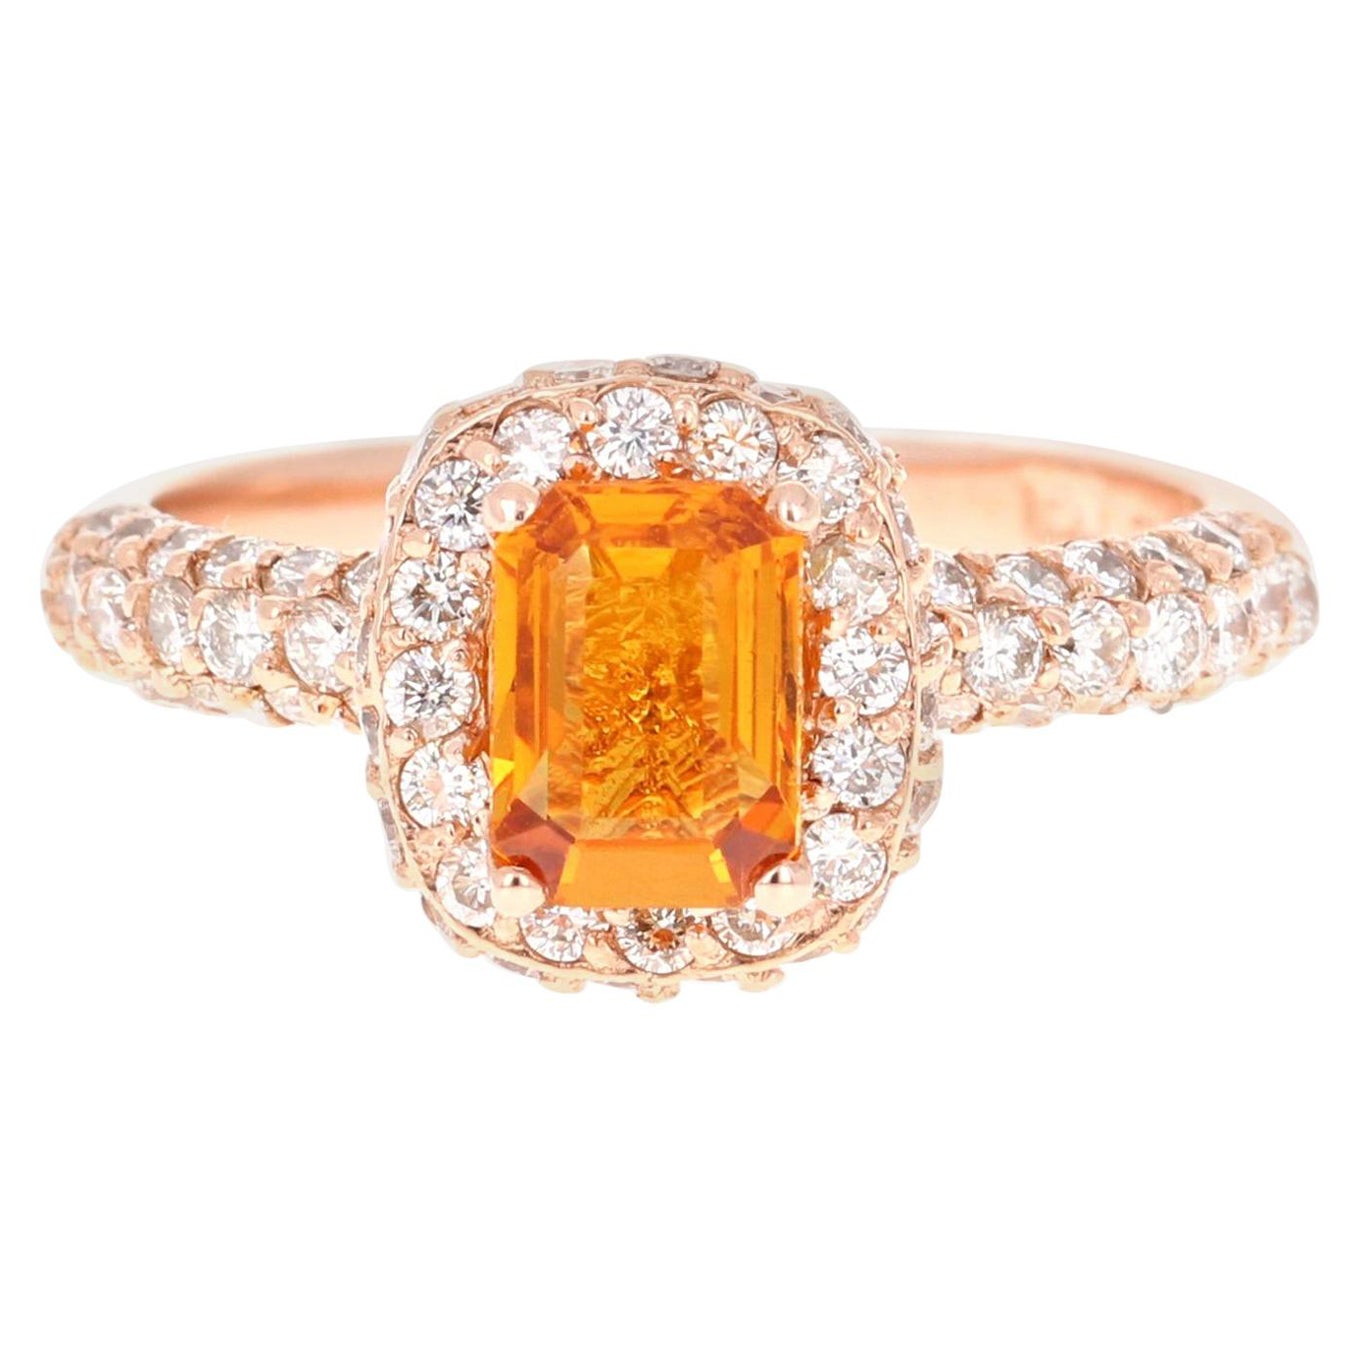 Bague en or rose avec saphir orange de 1,92 carat et diamants